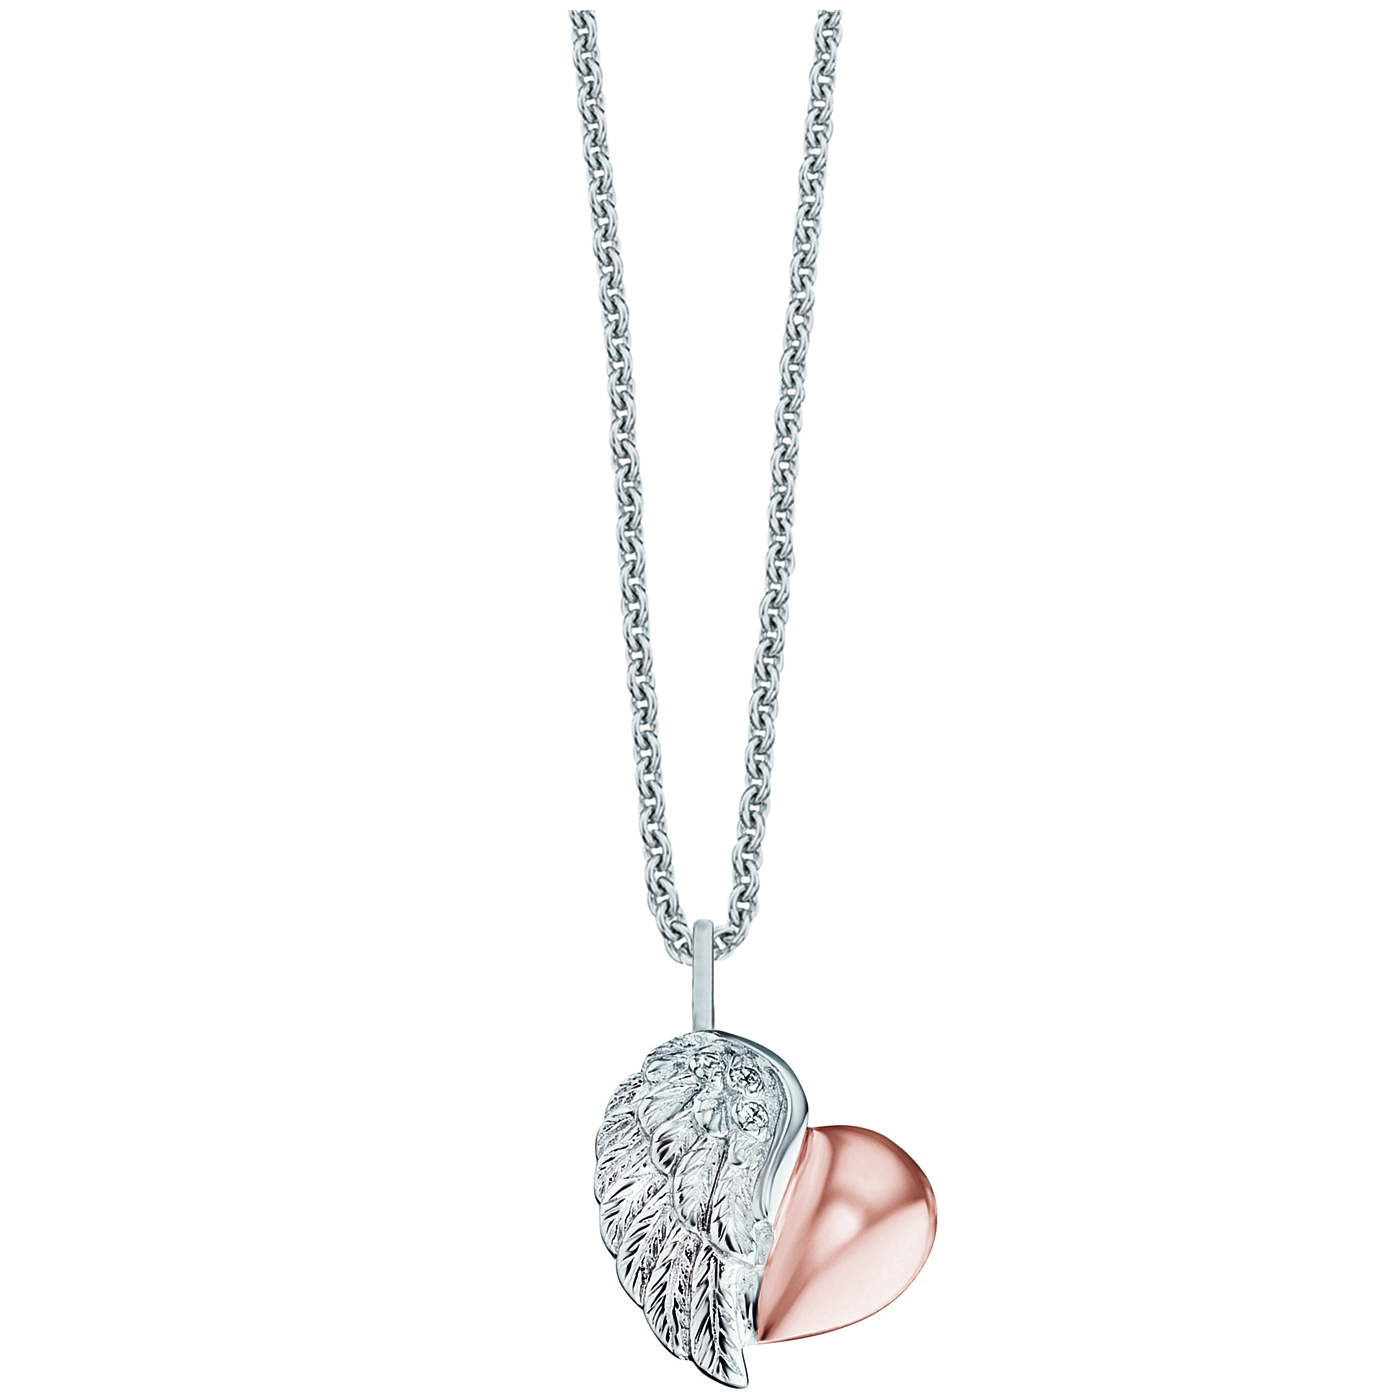 Engelsrufer Liebe Schenken Necklace 925 silver / rose gold plated zirconia